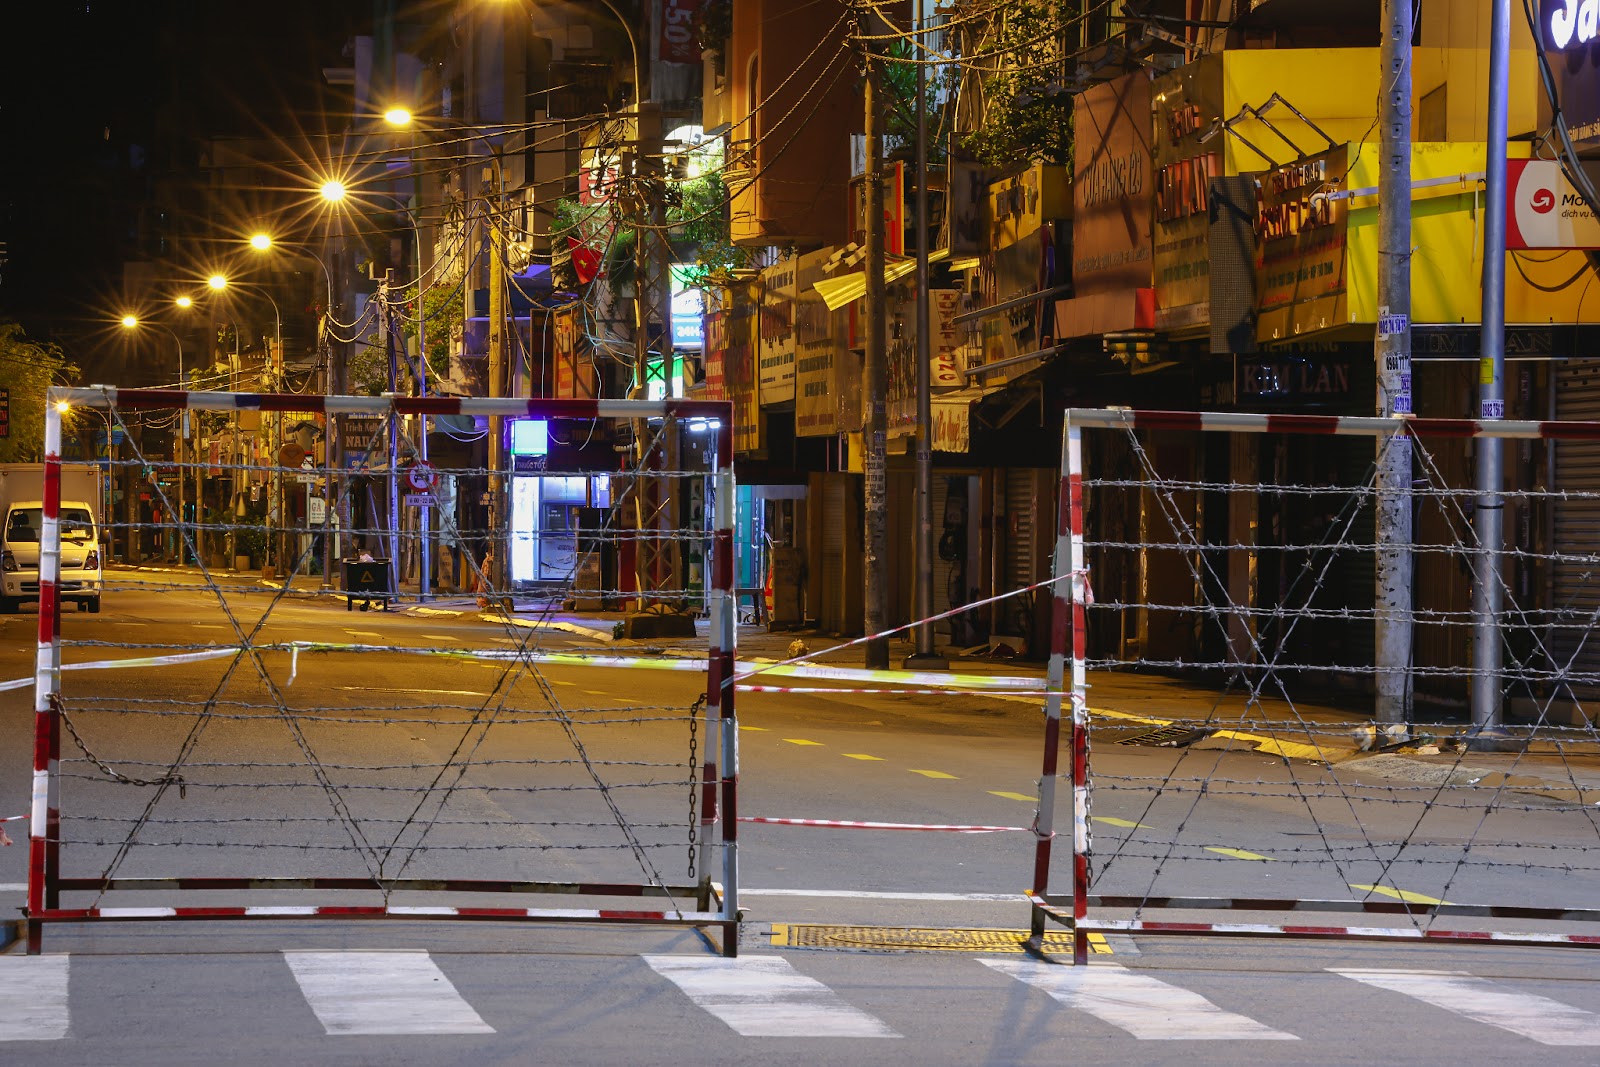 “Bổ túc” đường phố Sài Gòn lúc lên đèn dành cho người ở nhà lâu quá - 8